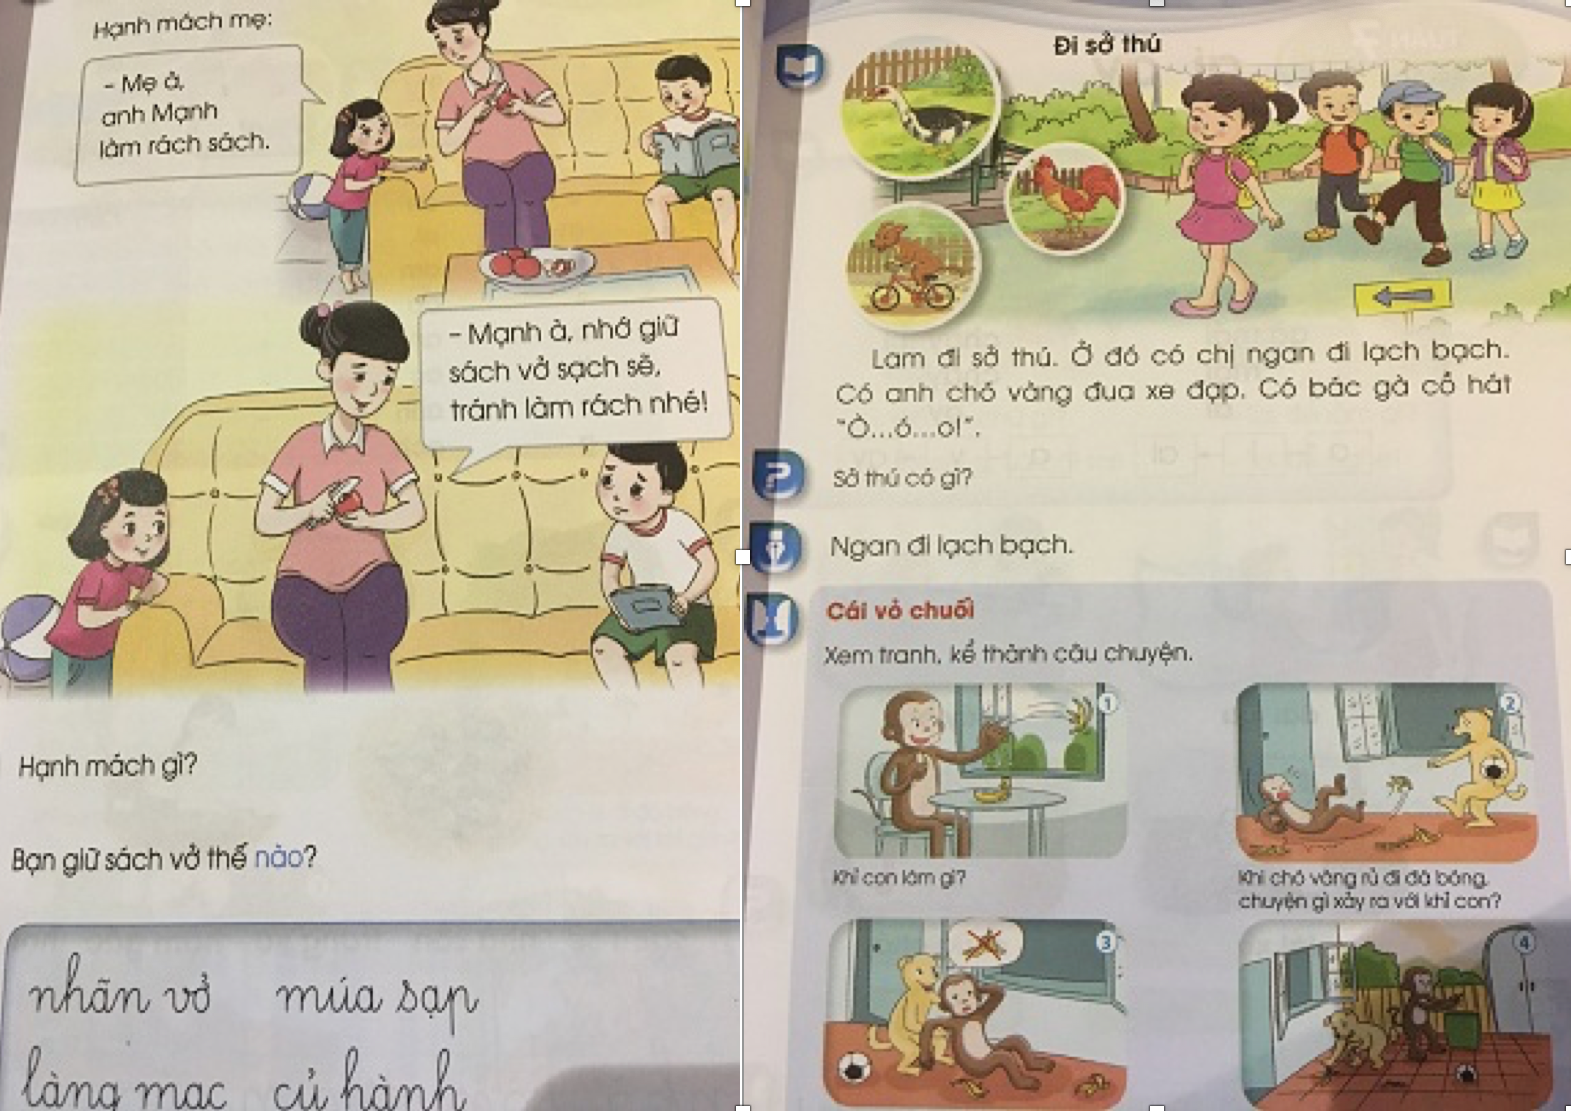 Phát hiện thêm một cuốn sách giáo khoa Tiếng Việt 1 chi chít 'sạn' - 1